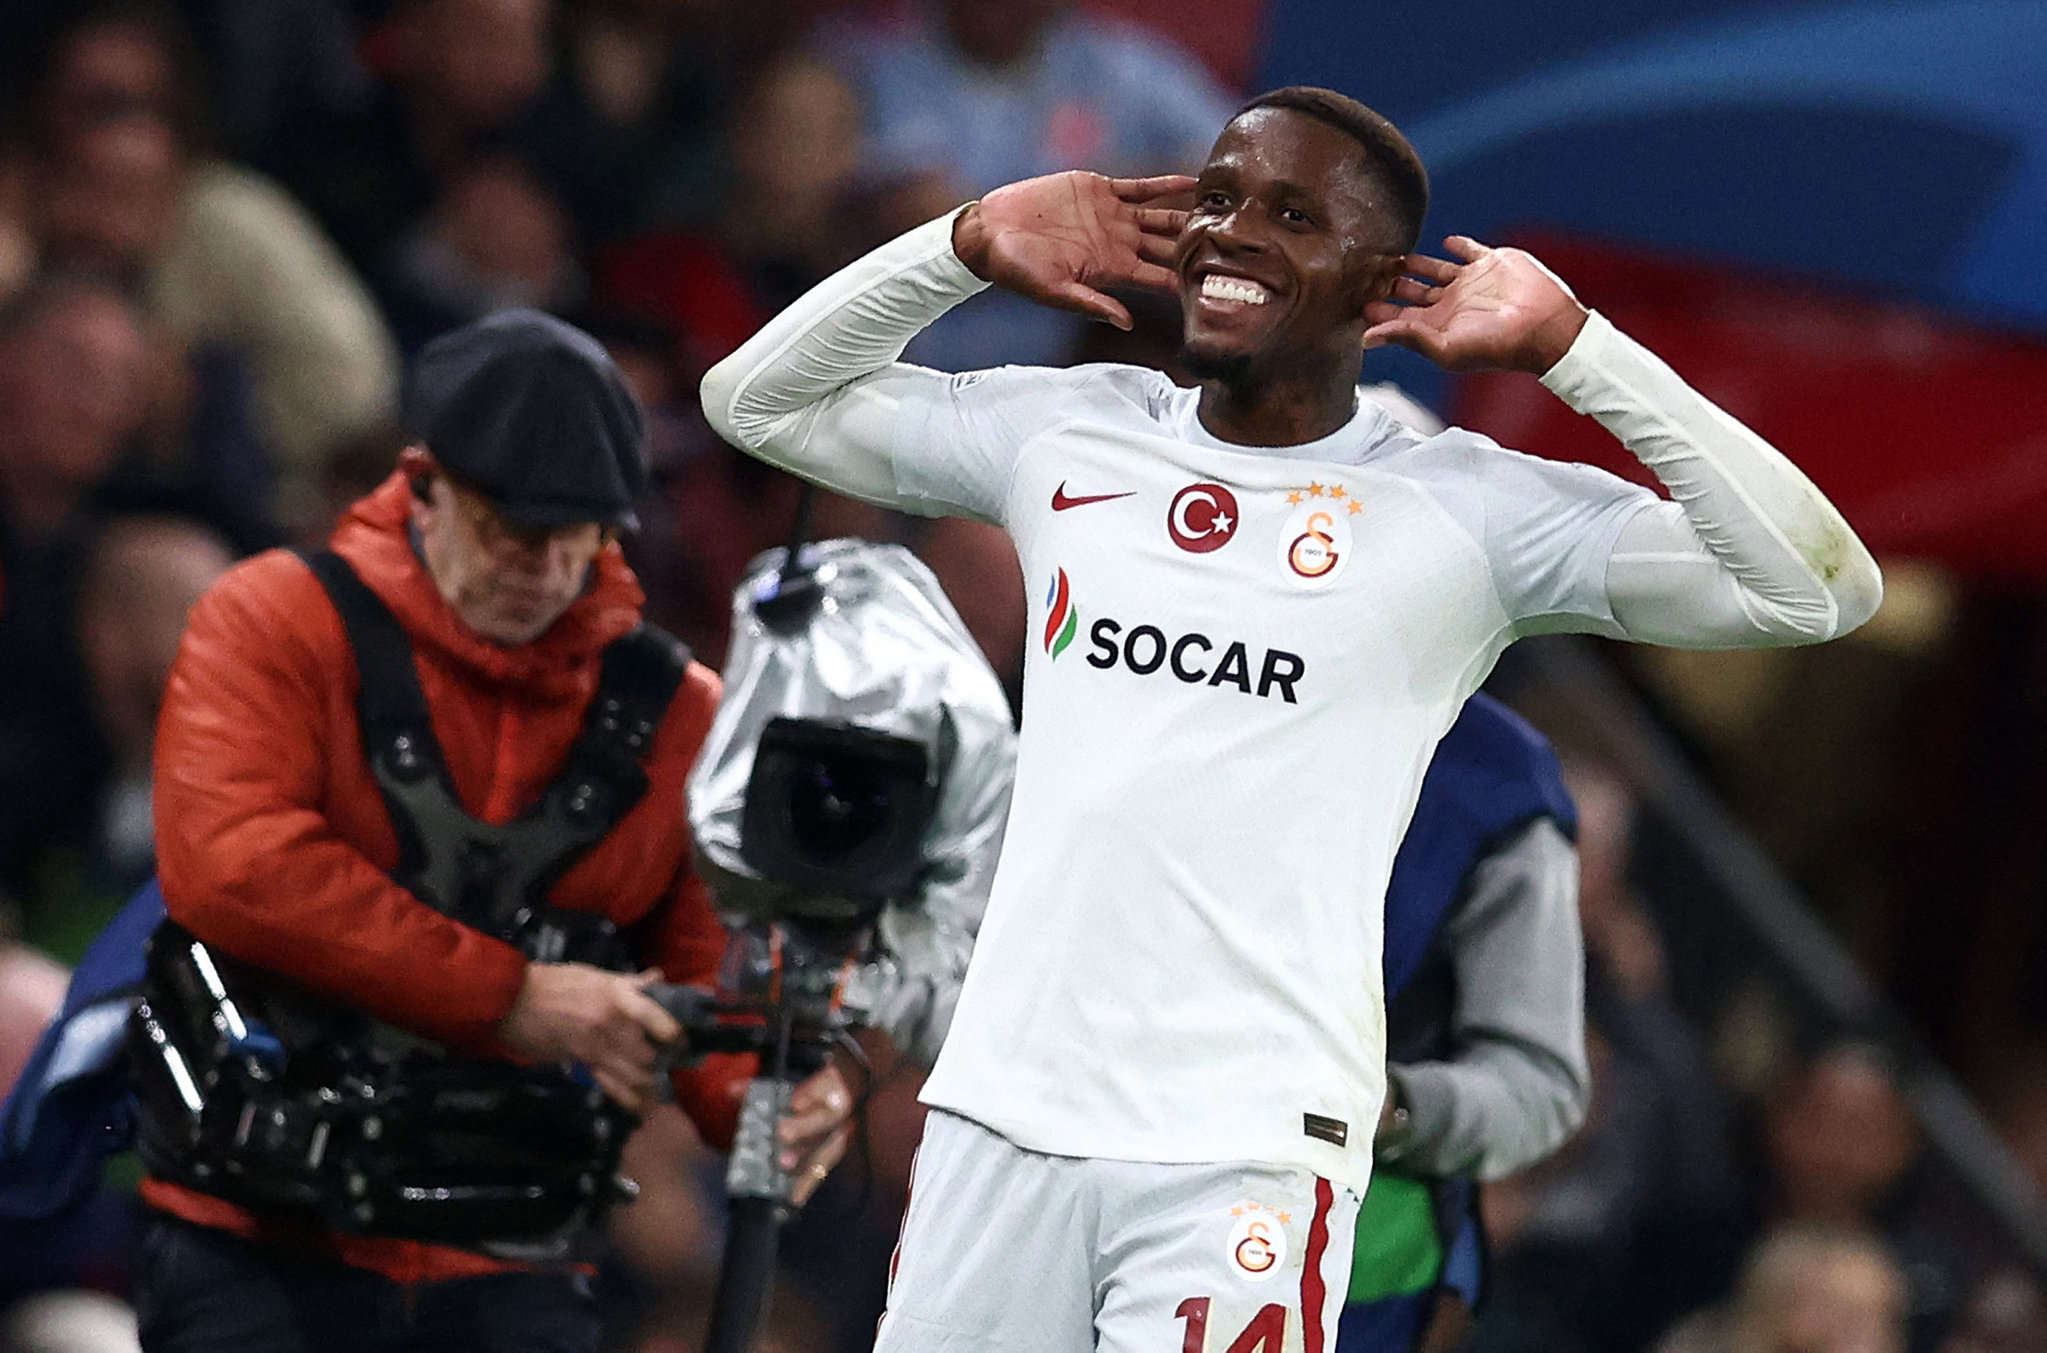 TRANSFER HABERİ | Galatasaray’da ilk ayrılık belli oldu! 4 İngiliz kulübü birden devrede